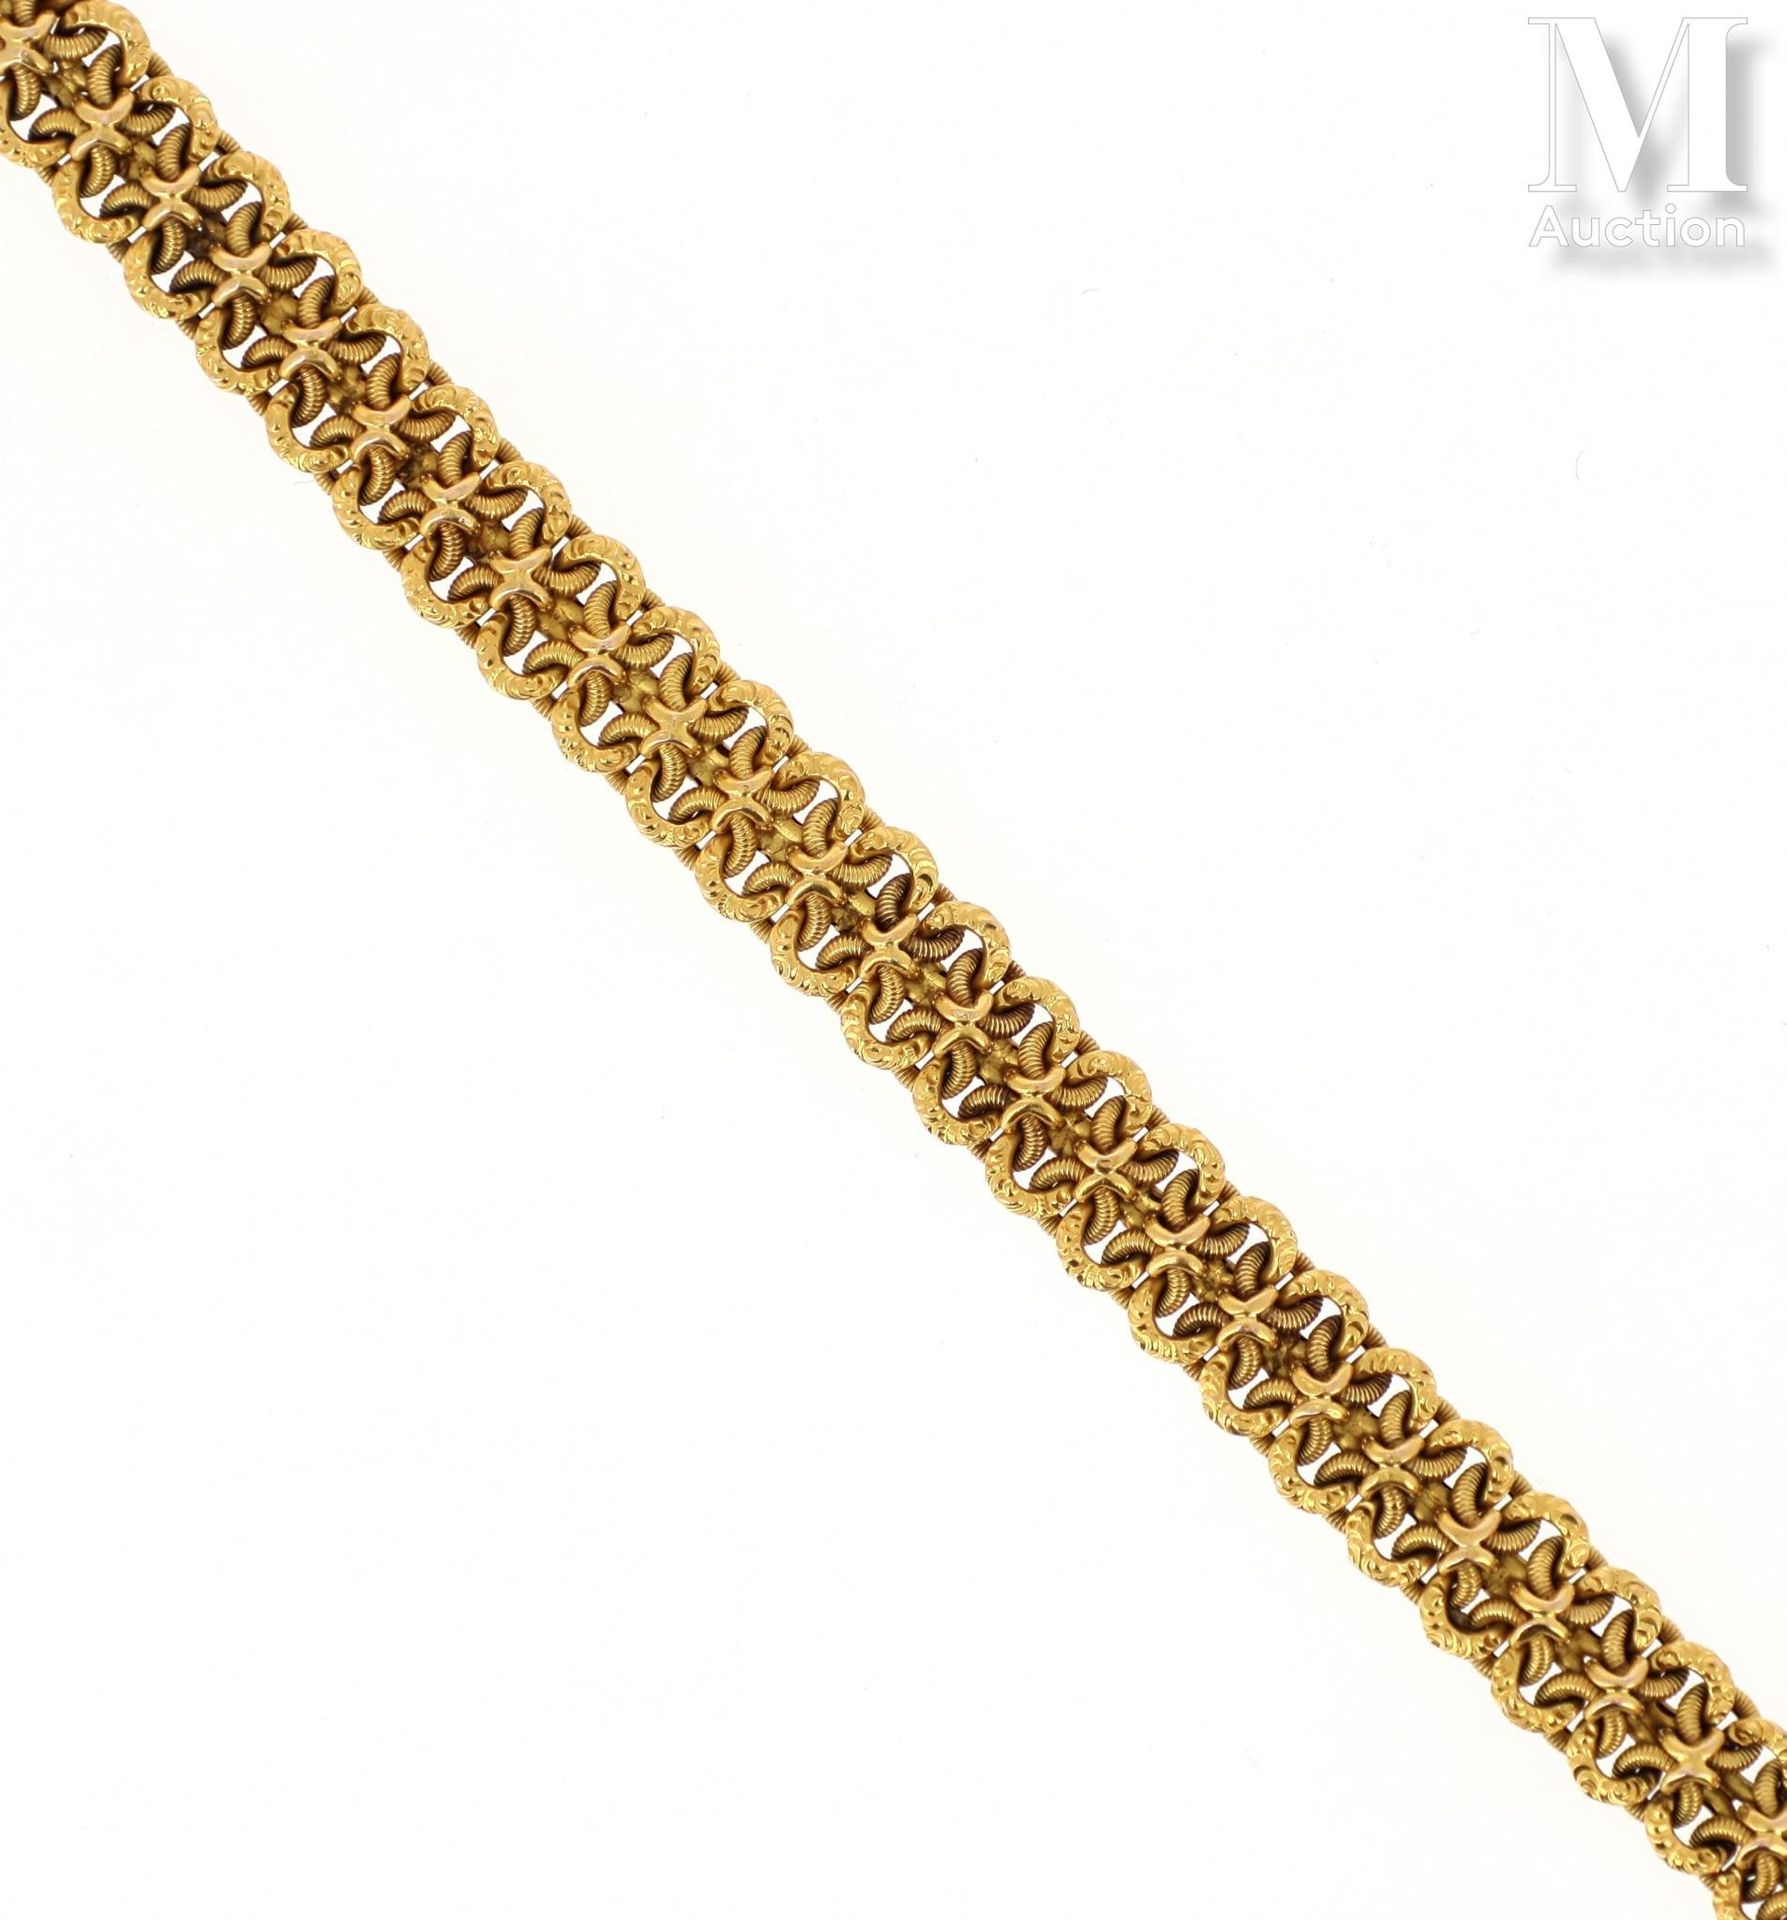 Bracelet or 18K黄金（千分之七十五）手镯，由花式网眼构成。19世纪中期的法国作品。
毛重：21.6克。长度：19厘米